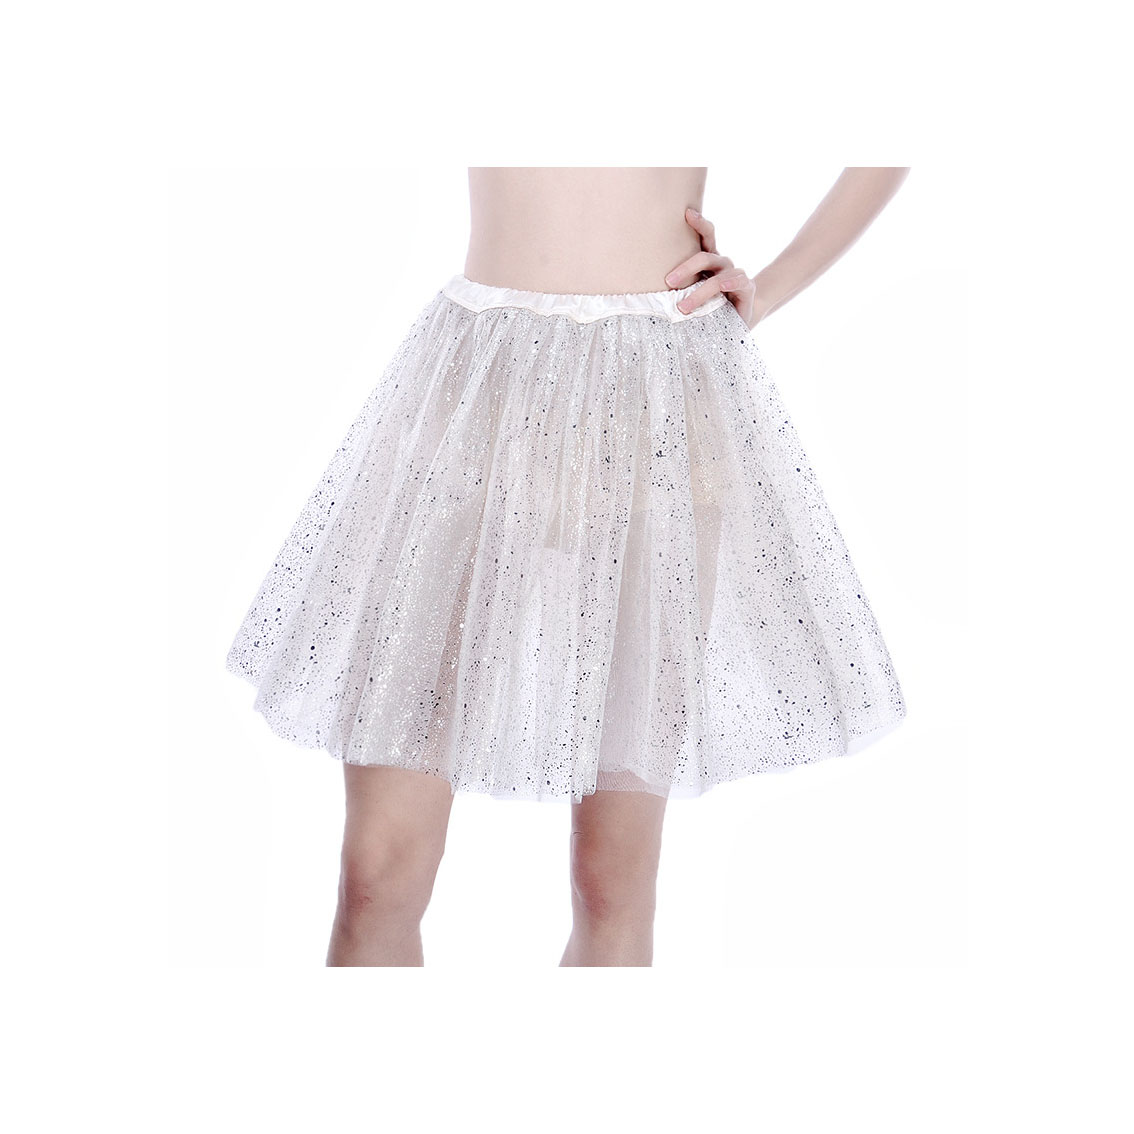 Adult Tutu Skirt Sequin Gilding Polka Dot 3 Layers Party Dance Ballet Pettiskirt Tulle Girl Mini Skirt off white